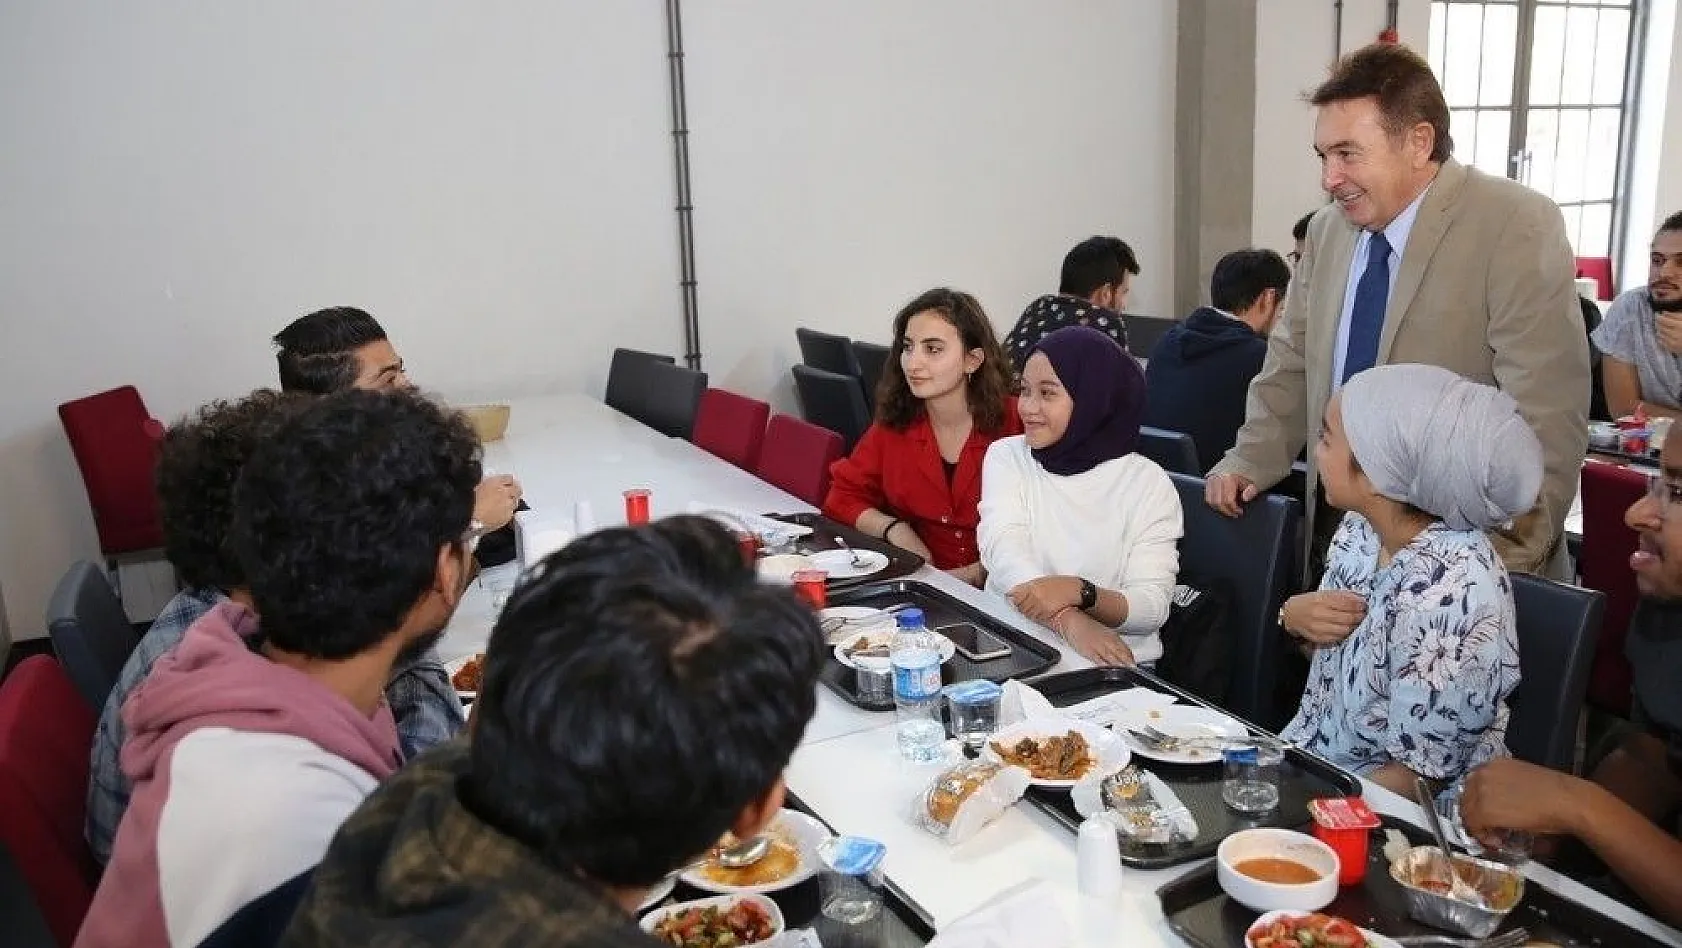 AGÜ'de Öğrenci buluşmaları
